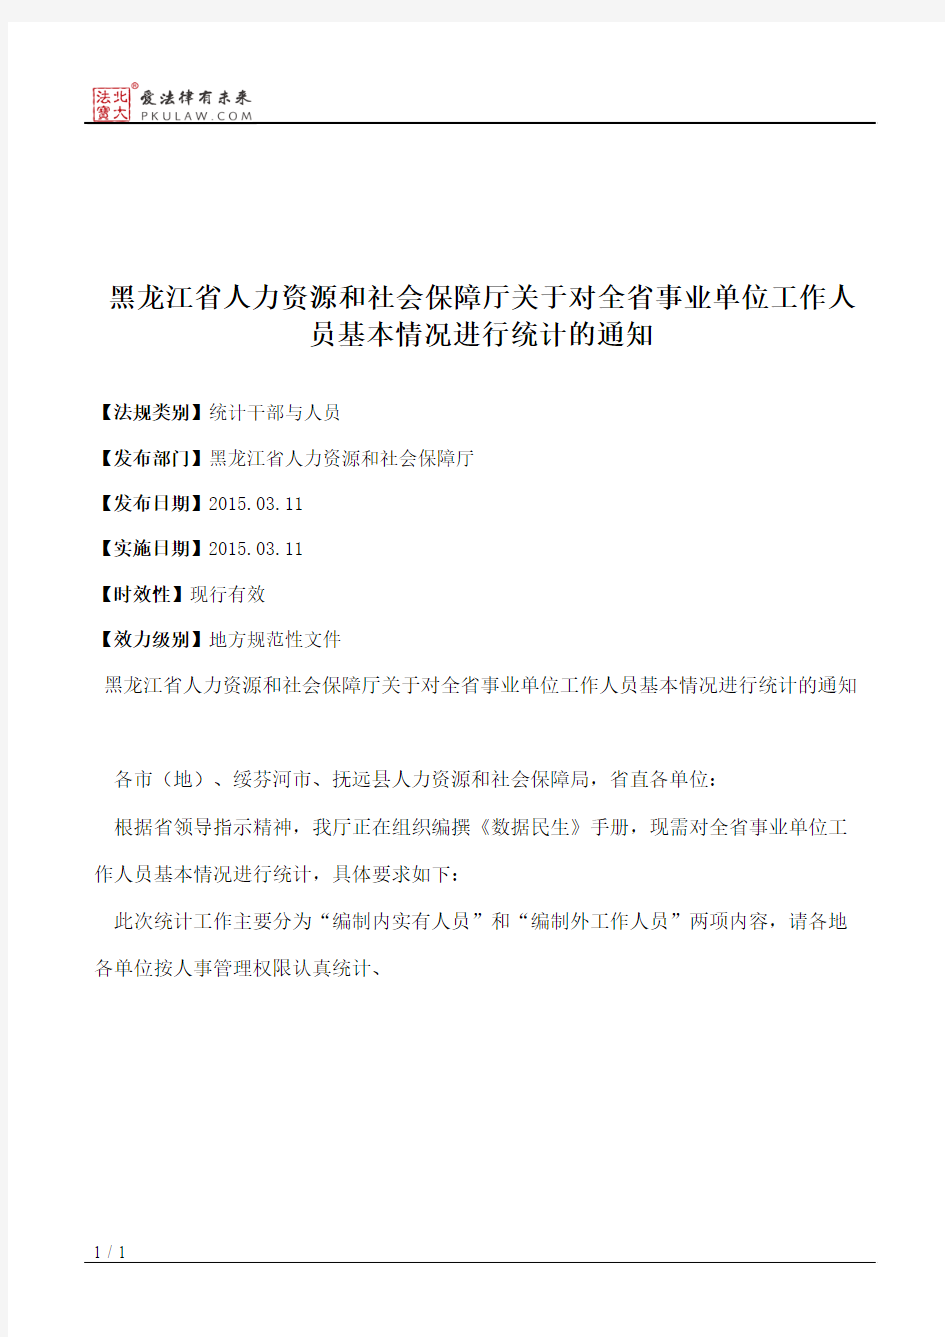 黑龙江省人力资源和社会保障厅关于对全省事业单位工作人员基本情